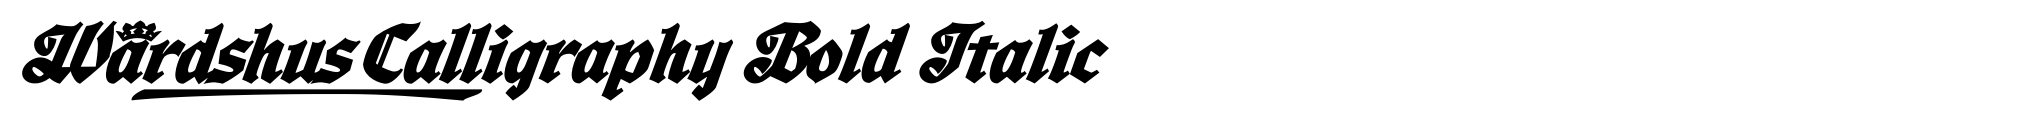 Wardshus Calligraphy Bold Italic image